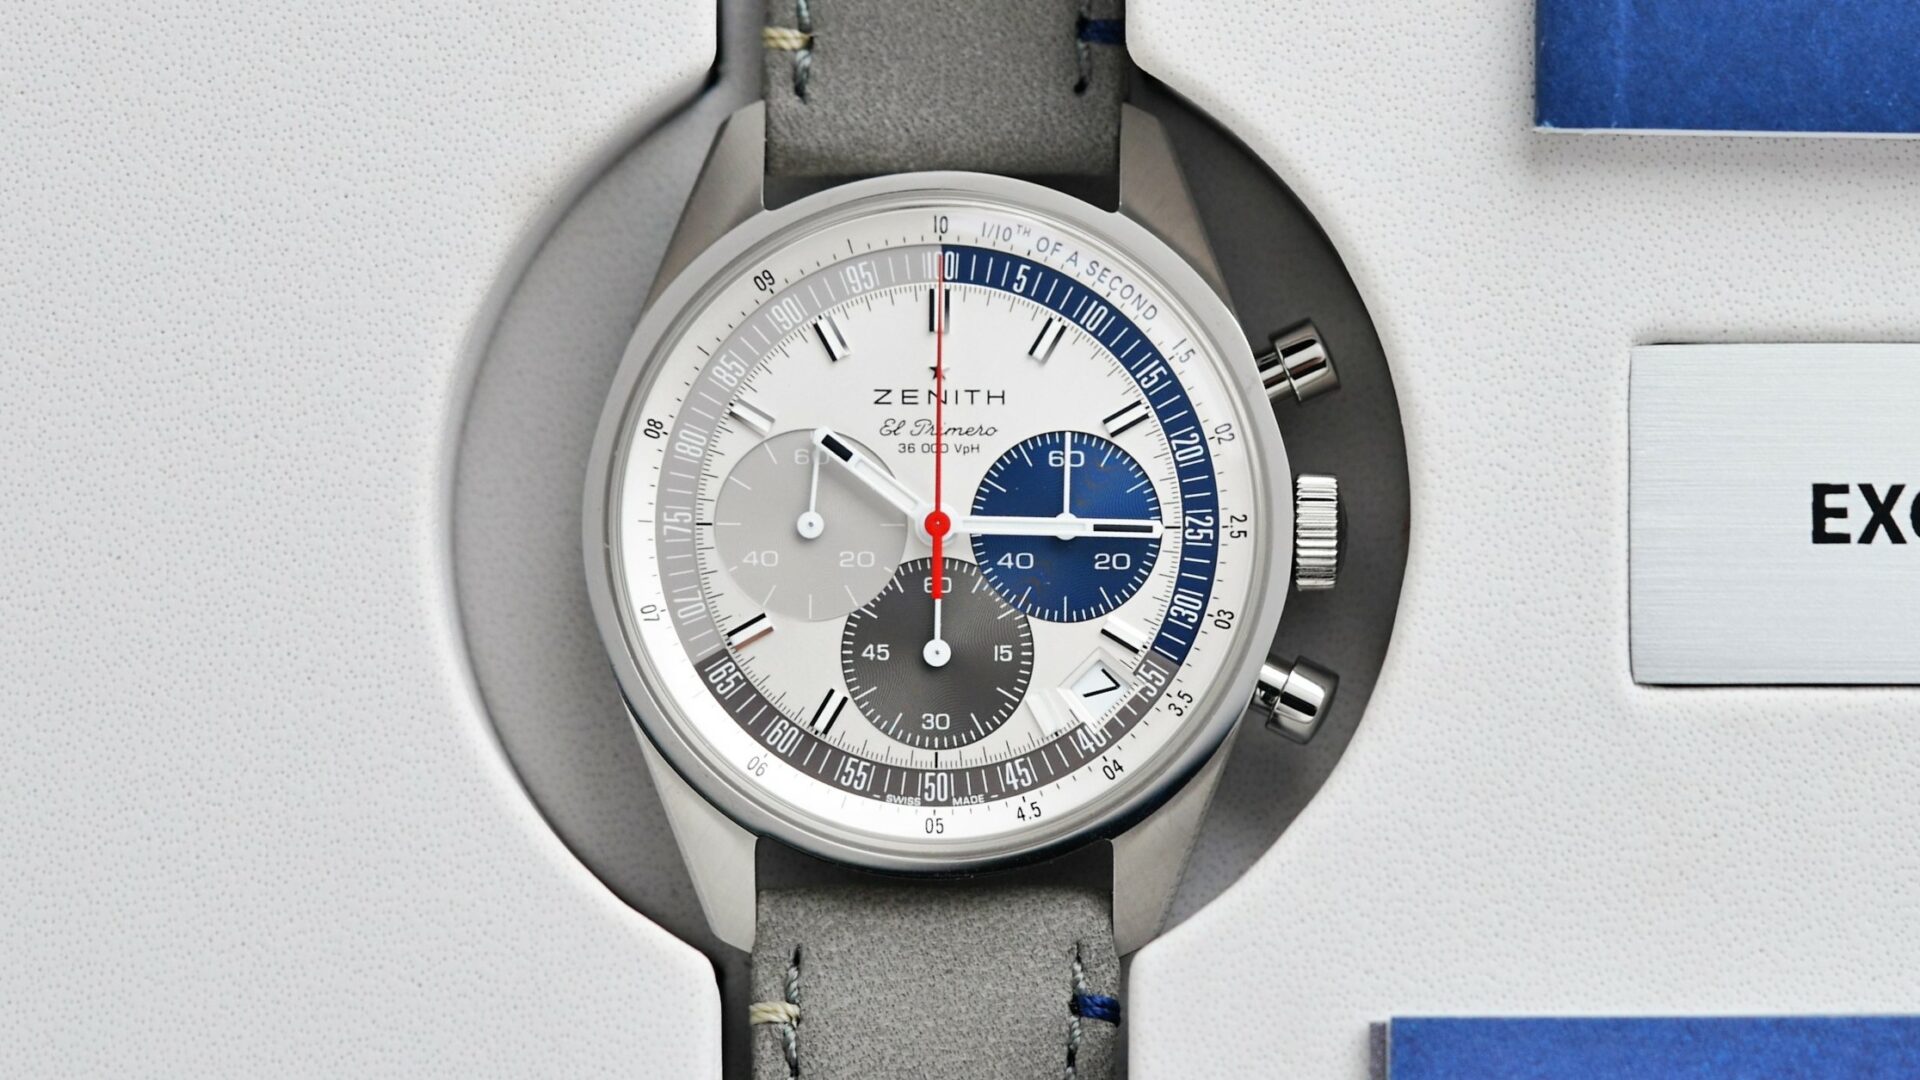 Zenith Chronomaster Original Striking 10th watch featured underneath white light.